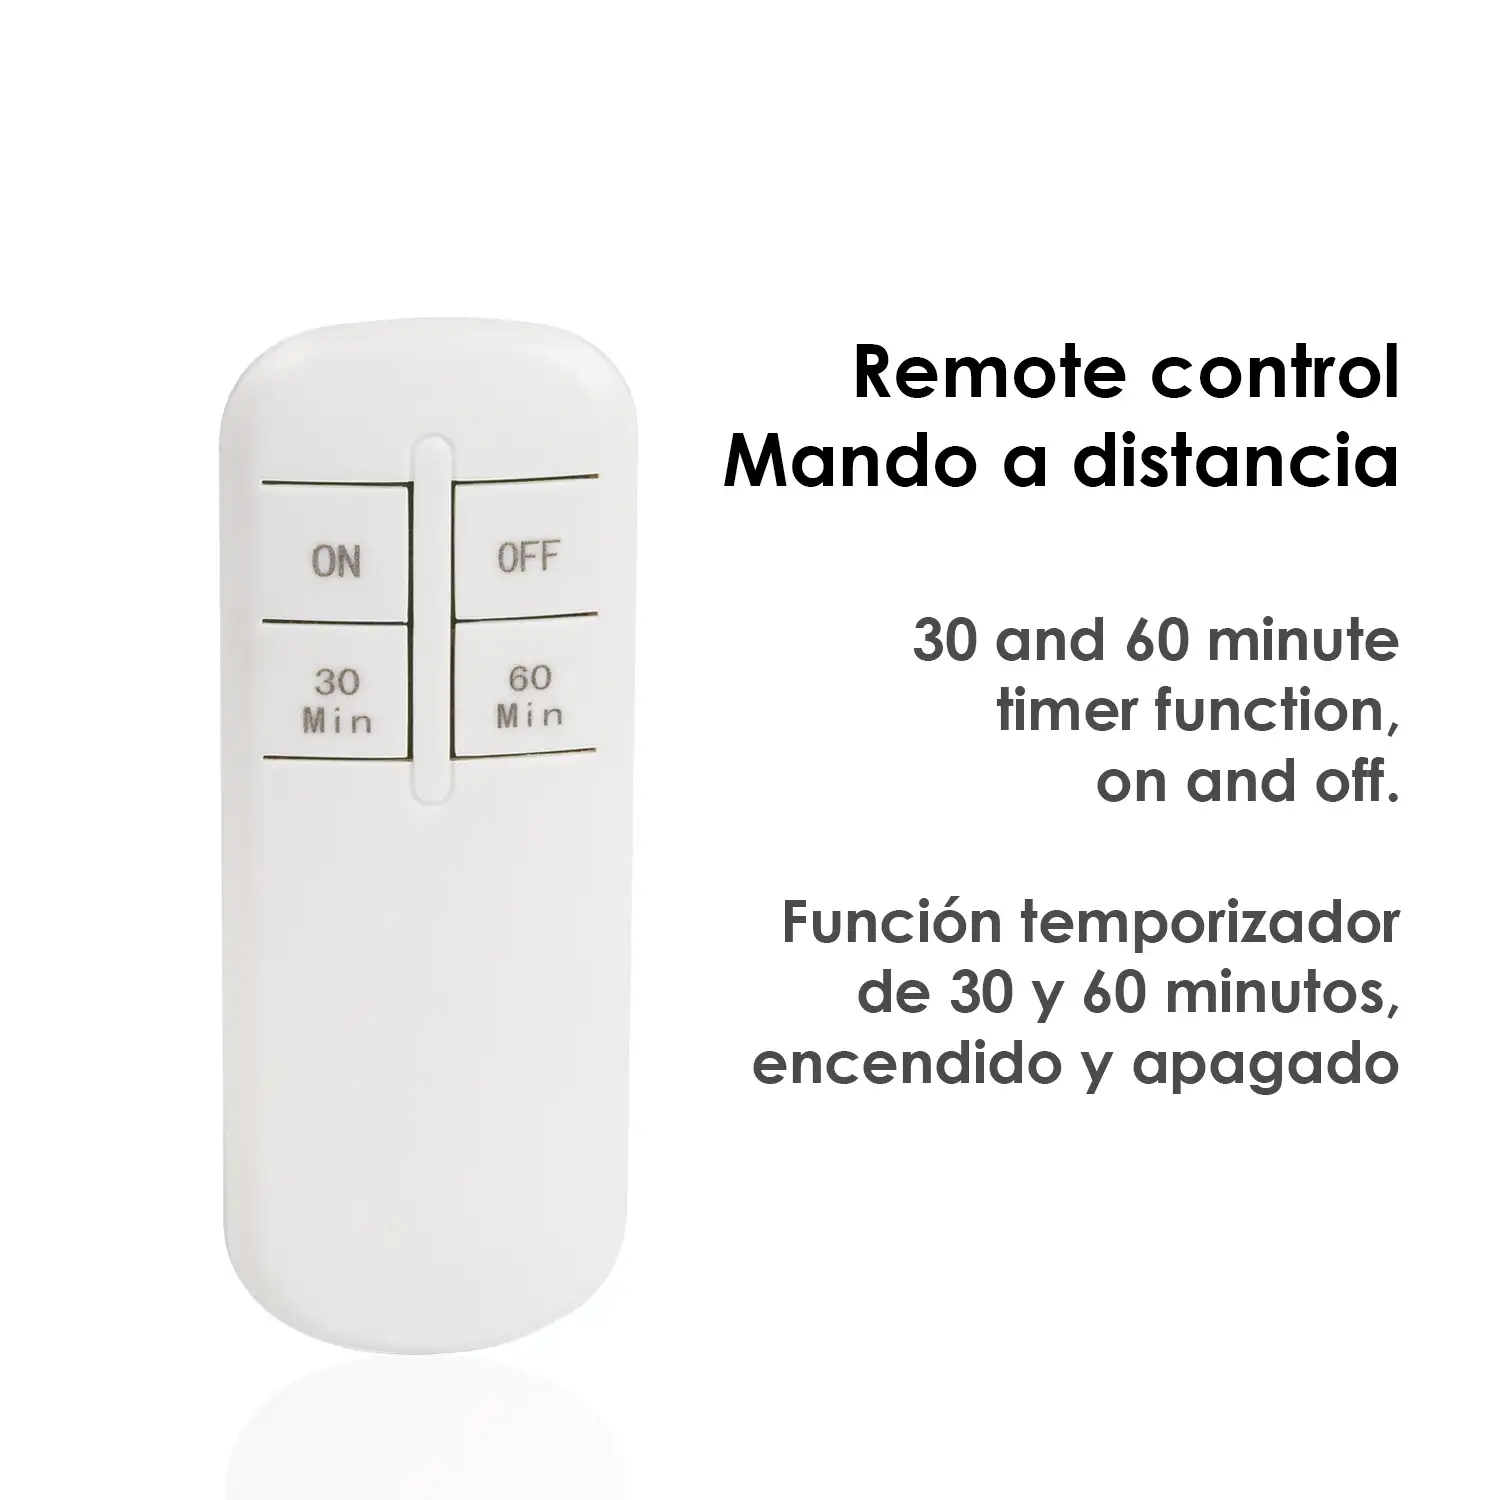 Adaptador de control remoto para bombillas E27. Incluye mando a distancia, función temporizador 30 y 60 minutos, encendido y apagado.